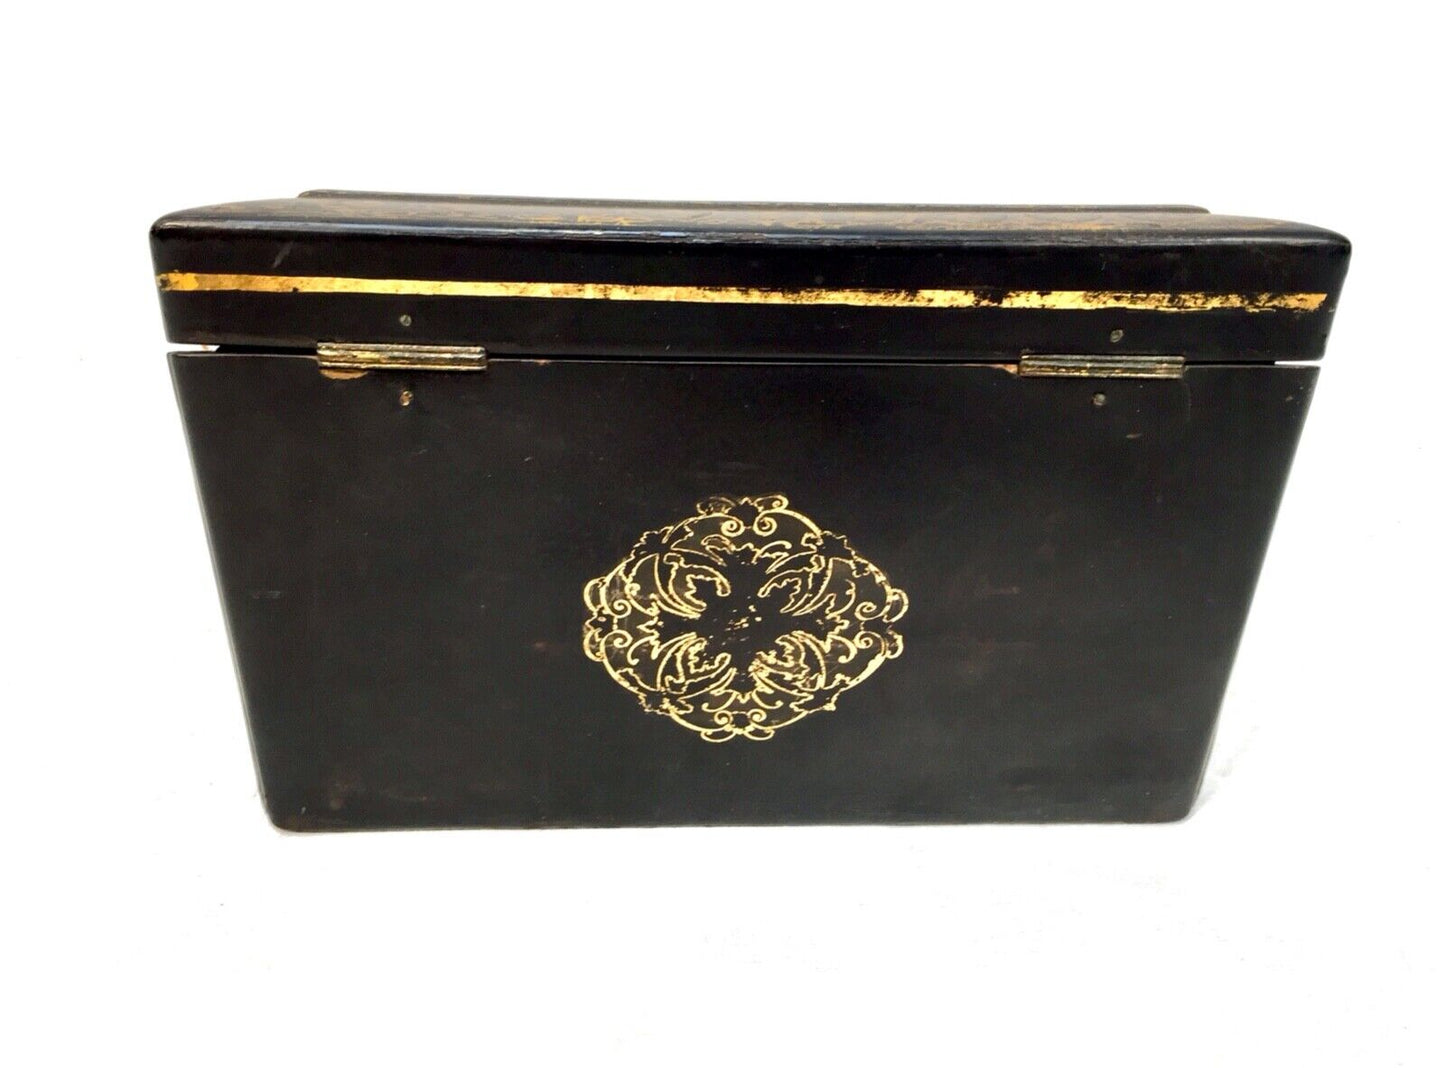 Antique Lacquered Papier Mâché Stationery Box by Jennens & Bettridge c1860